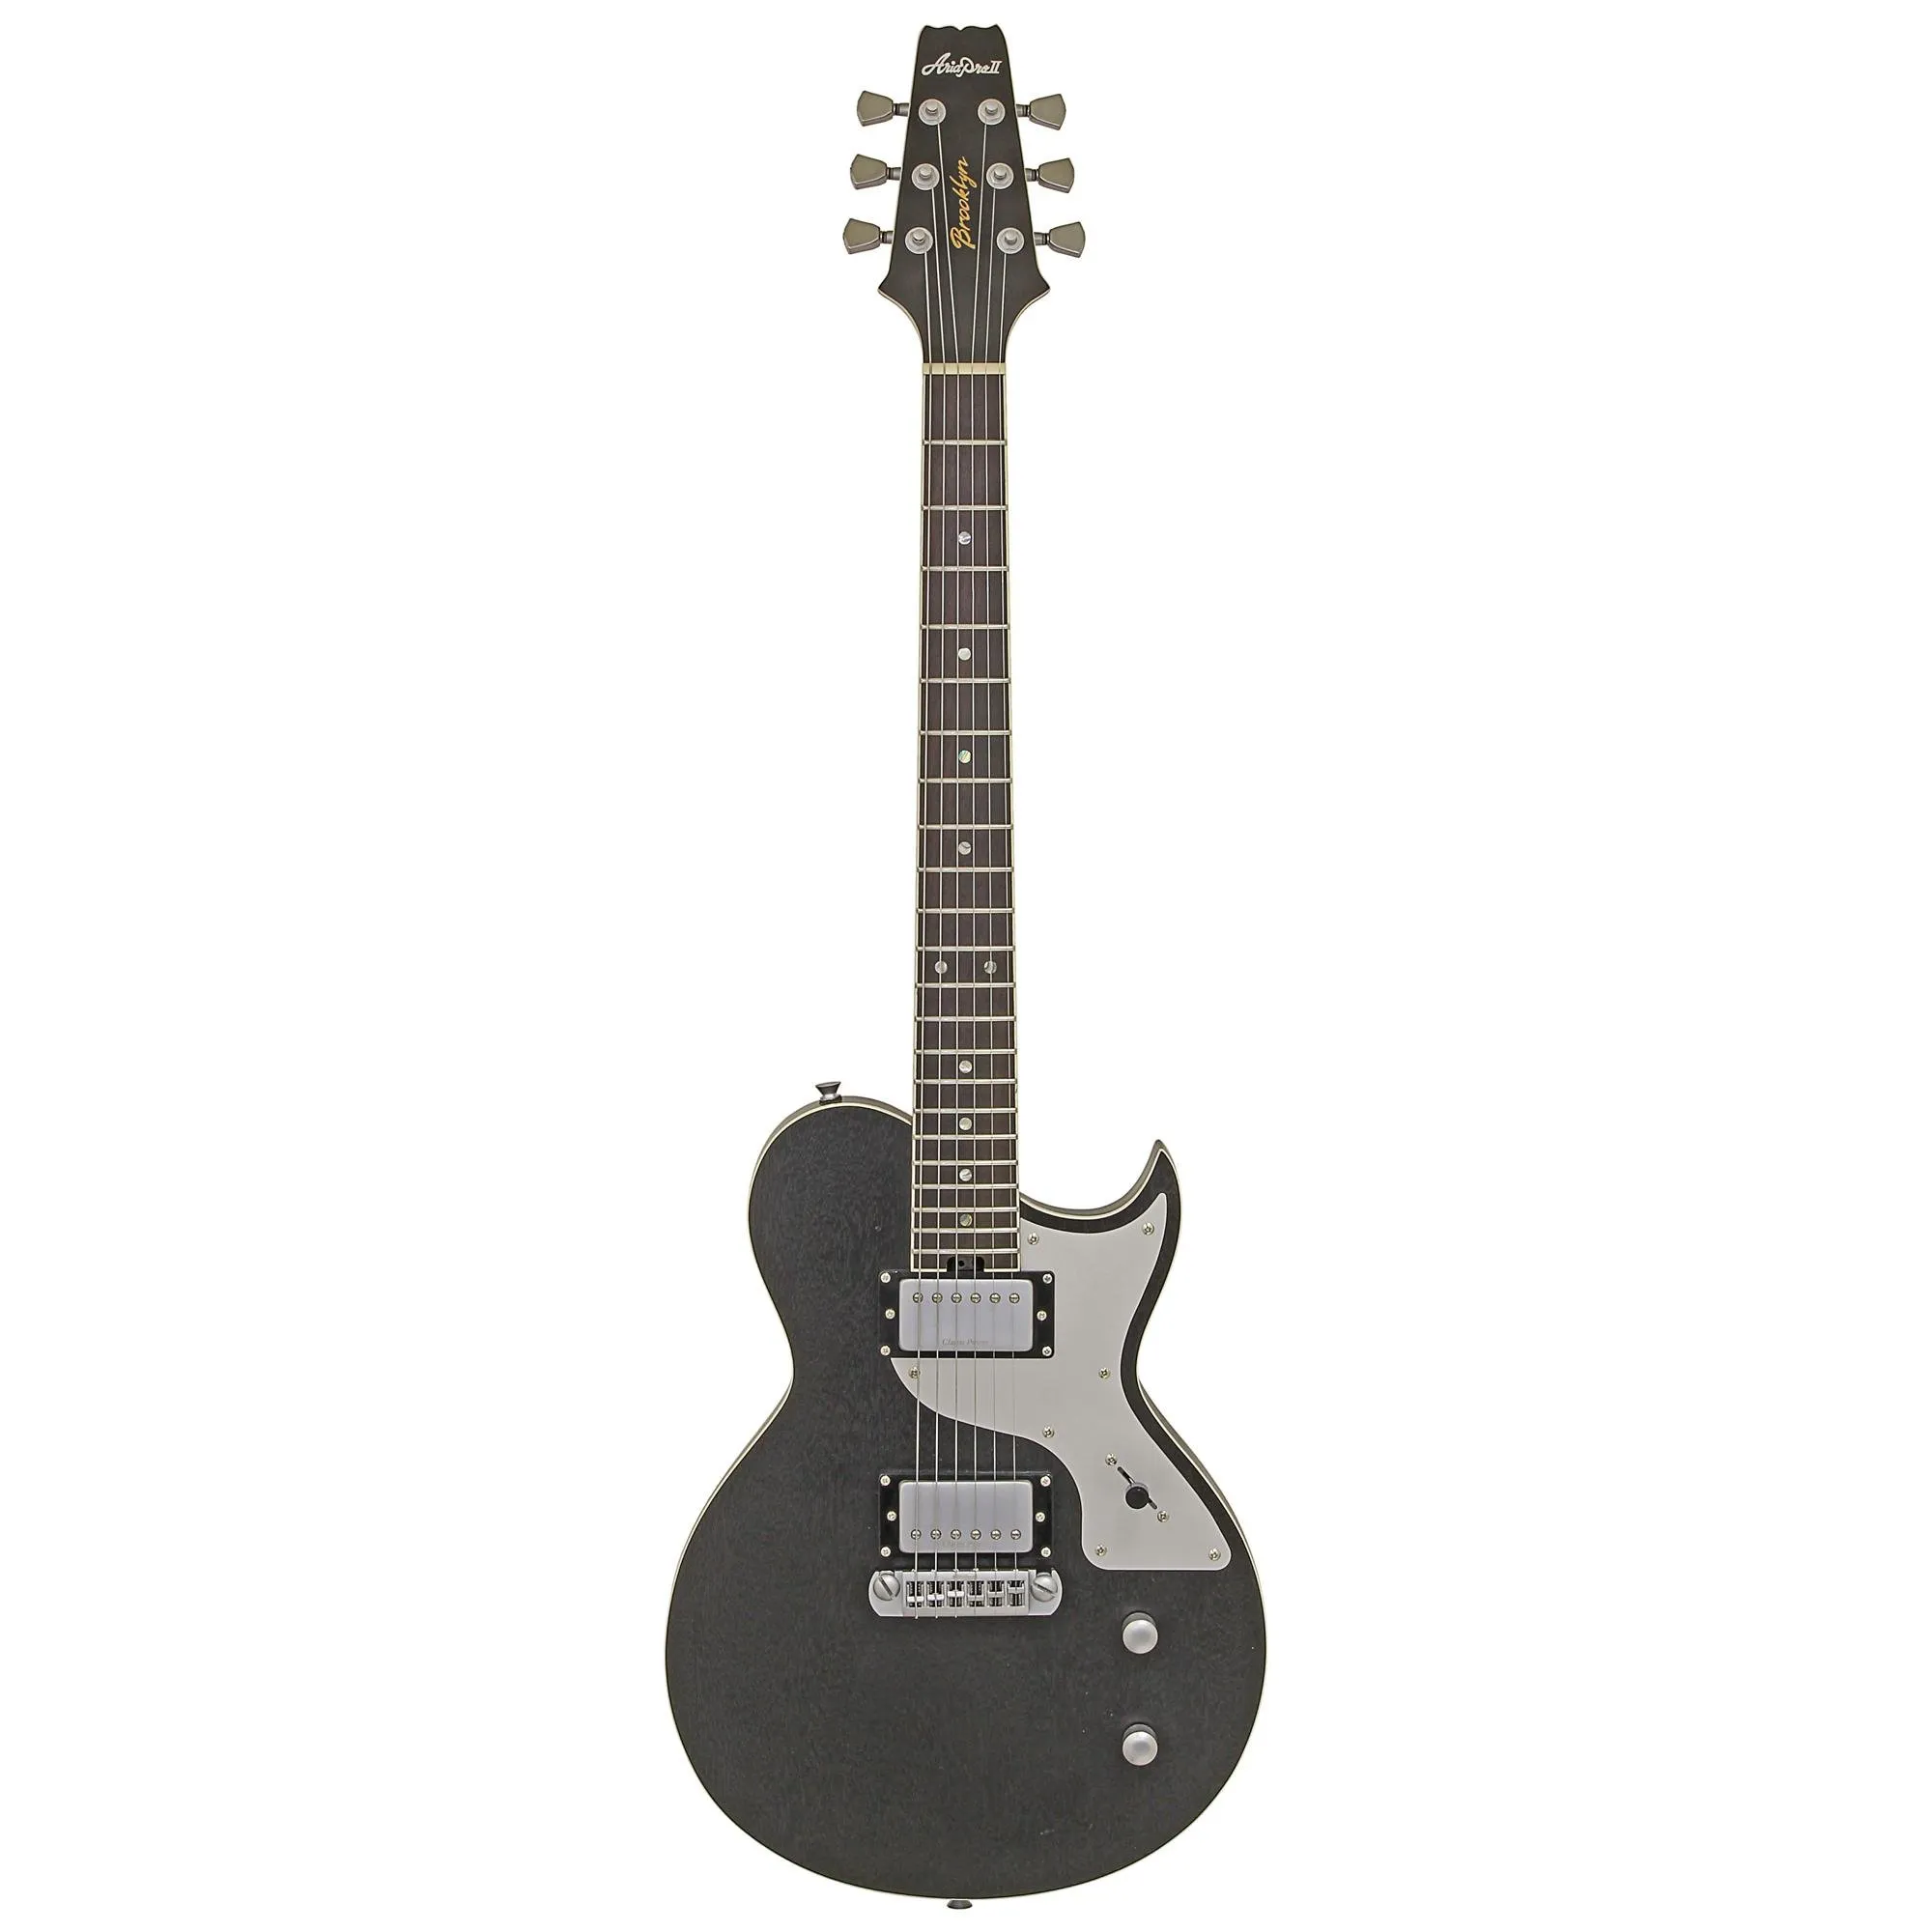 Guitarra Aria Pro II 718-MK2 Brooklyn Open Pore Black por 3.333,00 à vista no boleto/pix ou parcele em até 12x sem juros. Compre na loja Mundomax!